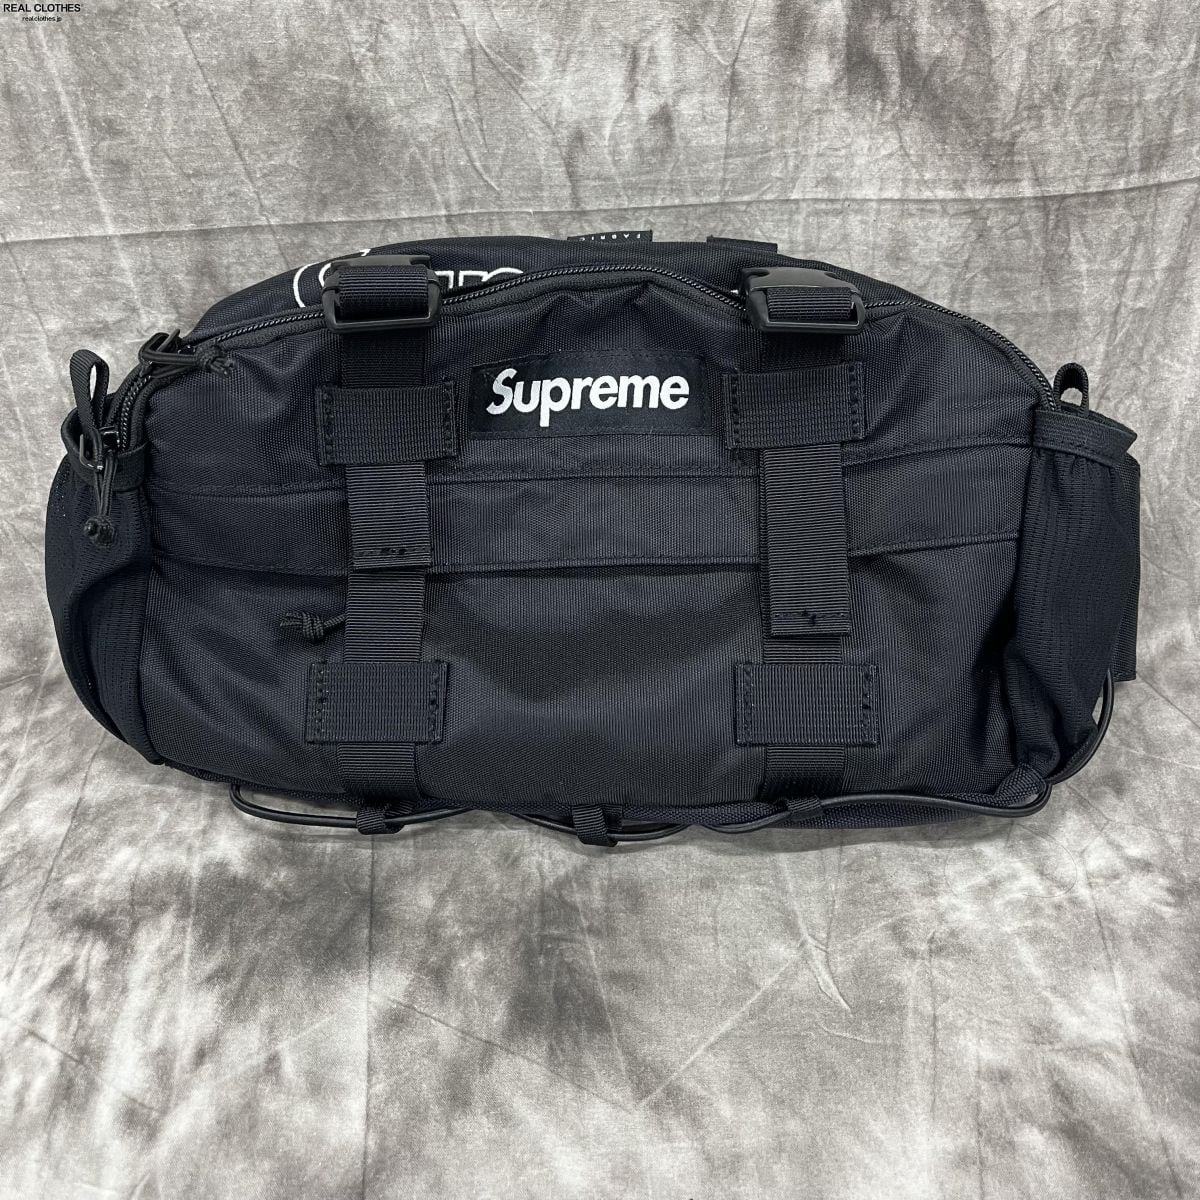 supreme waist bag 19aw
黒